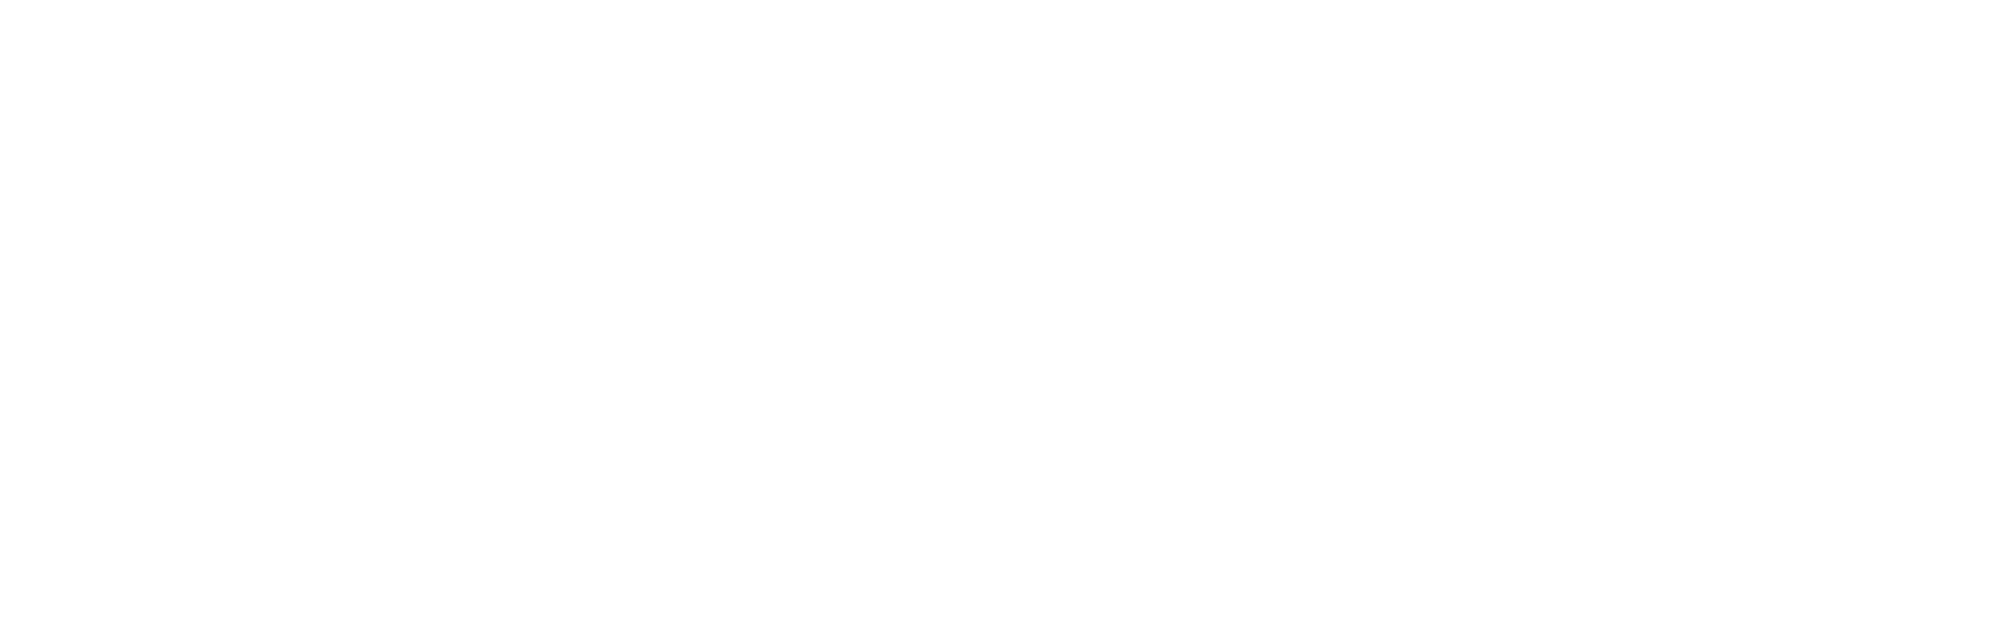 Dazzle is bringing the razzle to downtown arts complex | Arts &  Entertainment | denvergazette.com